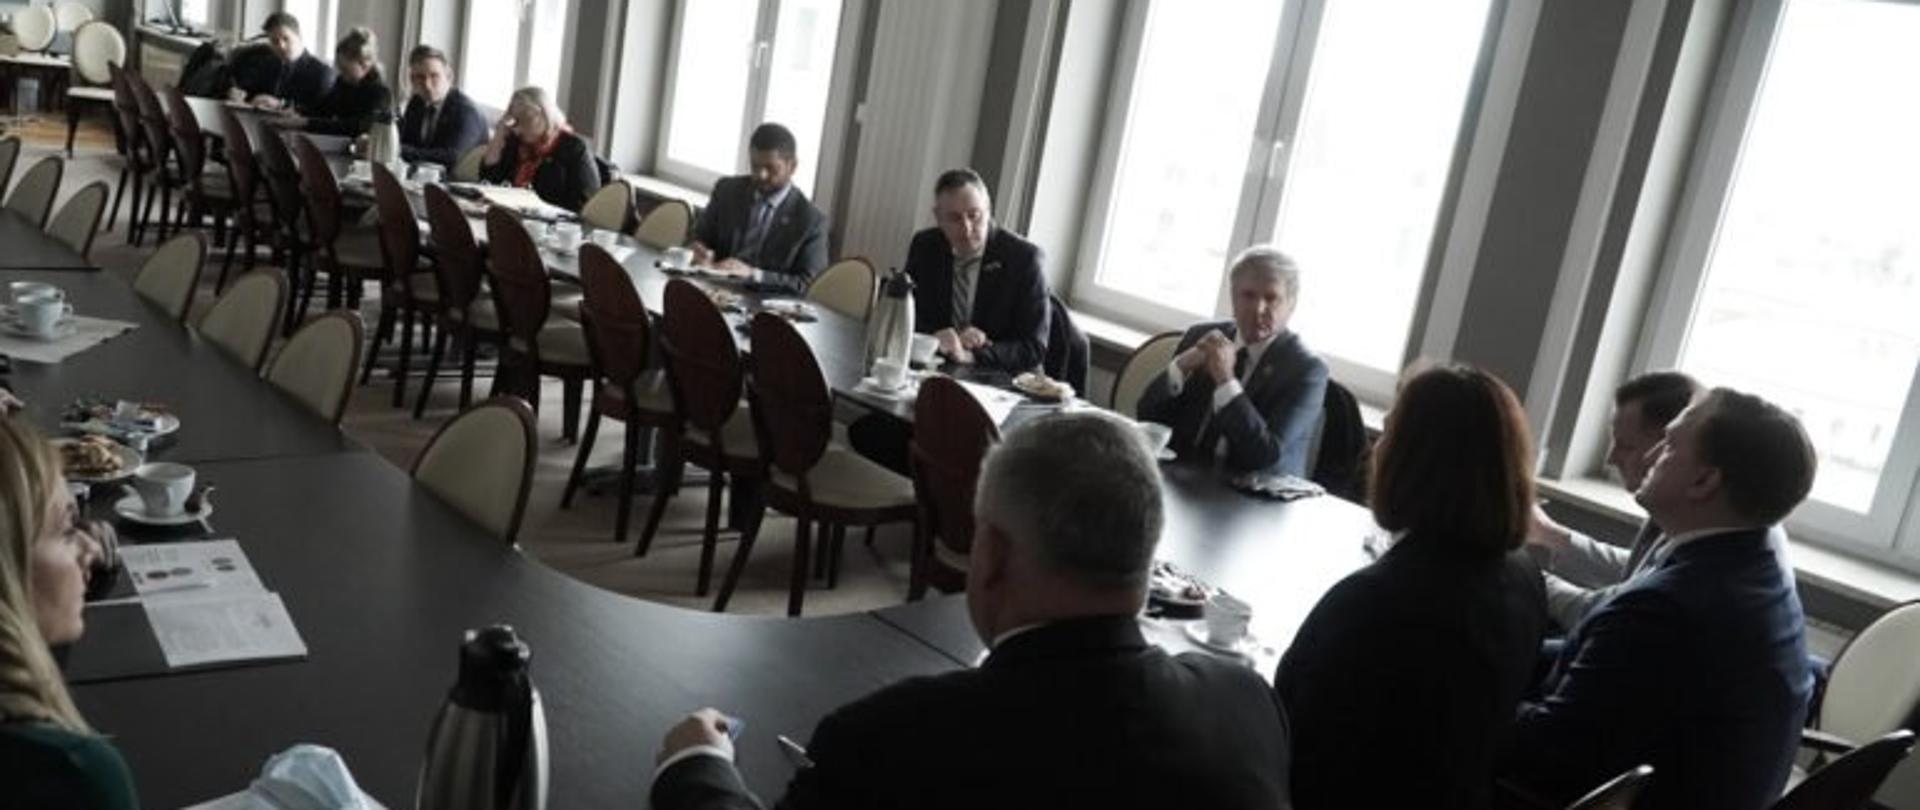 Przedstawiciele Kongresu USA podczas spotkania z wojewodą podkarpackim Ewą Leniart w jednej z sal Podkarpackiego Urzędu Wojewódzkiego w Rzeszowie.